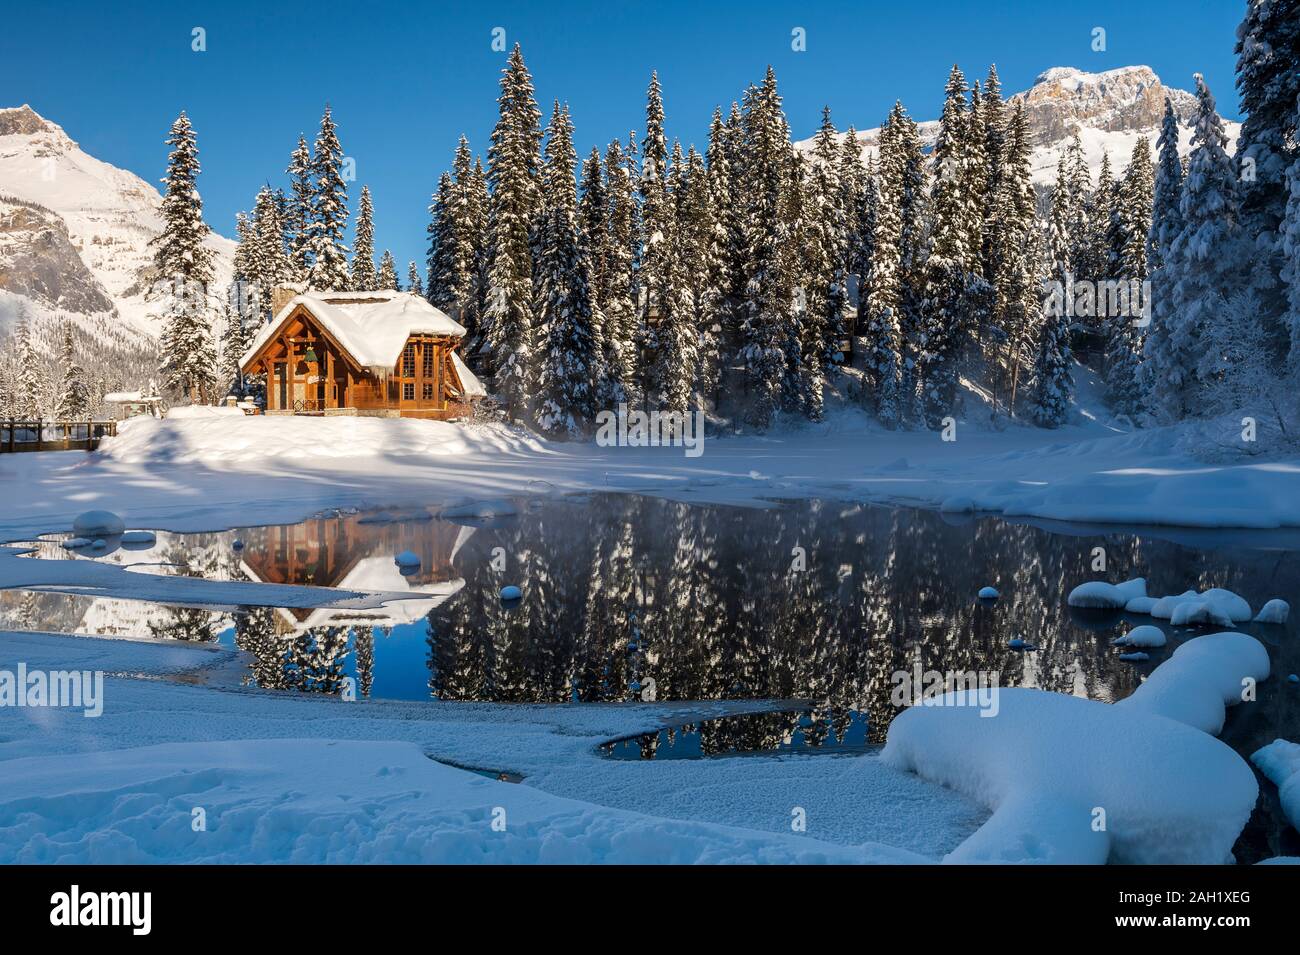 Cilantro on the lake at Emerald Lake in winter, Alberta, Canada, Stock Photo